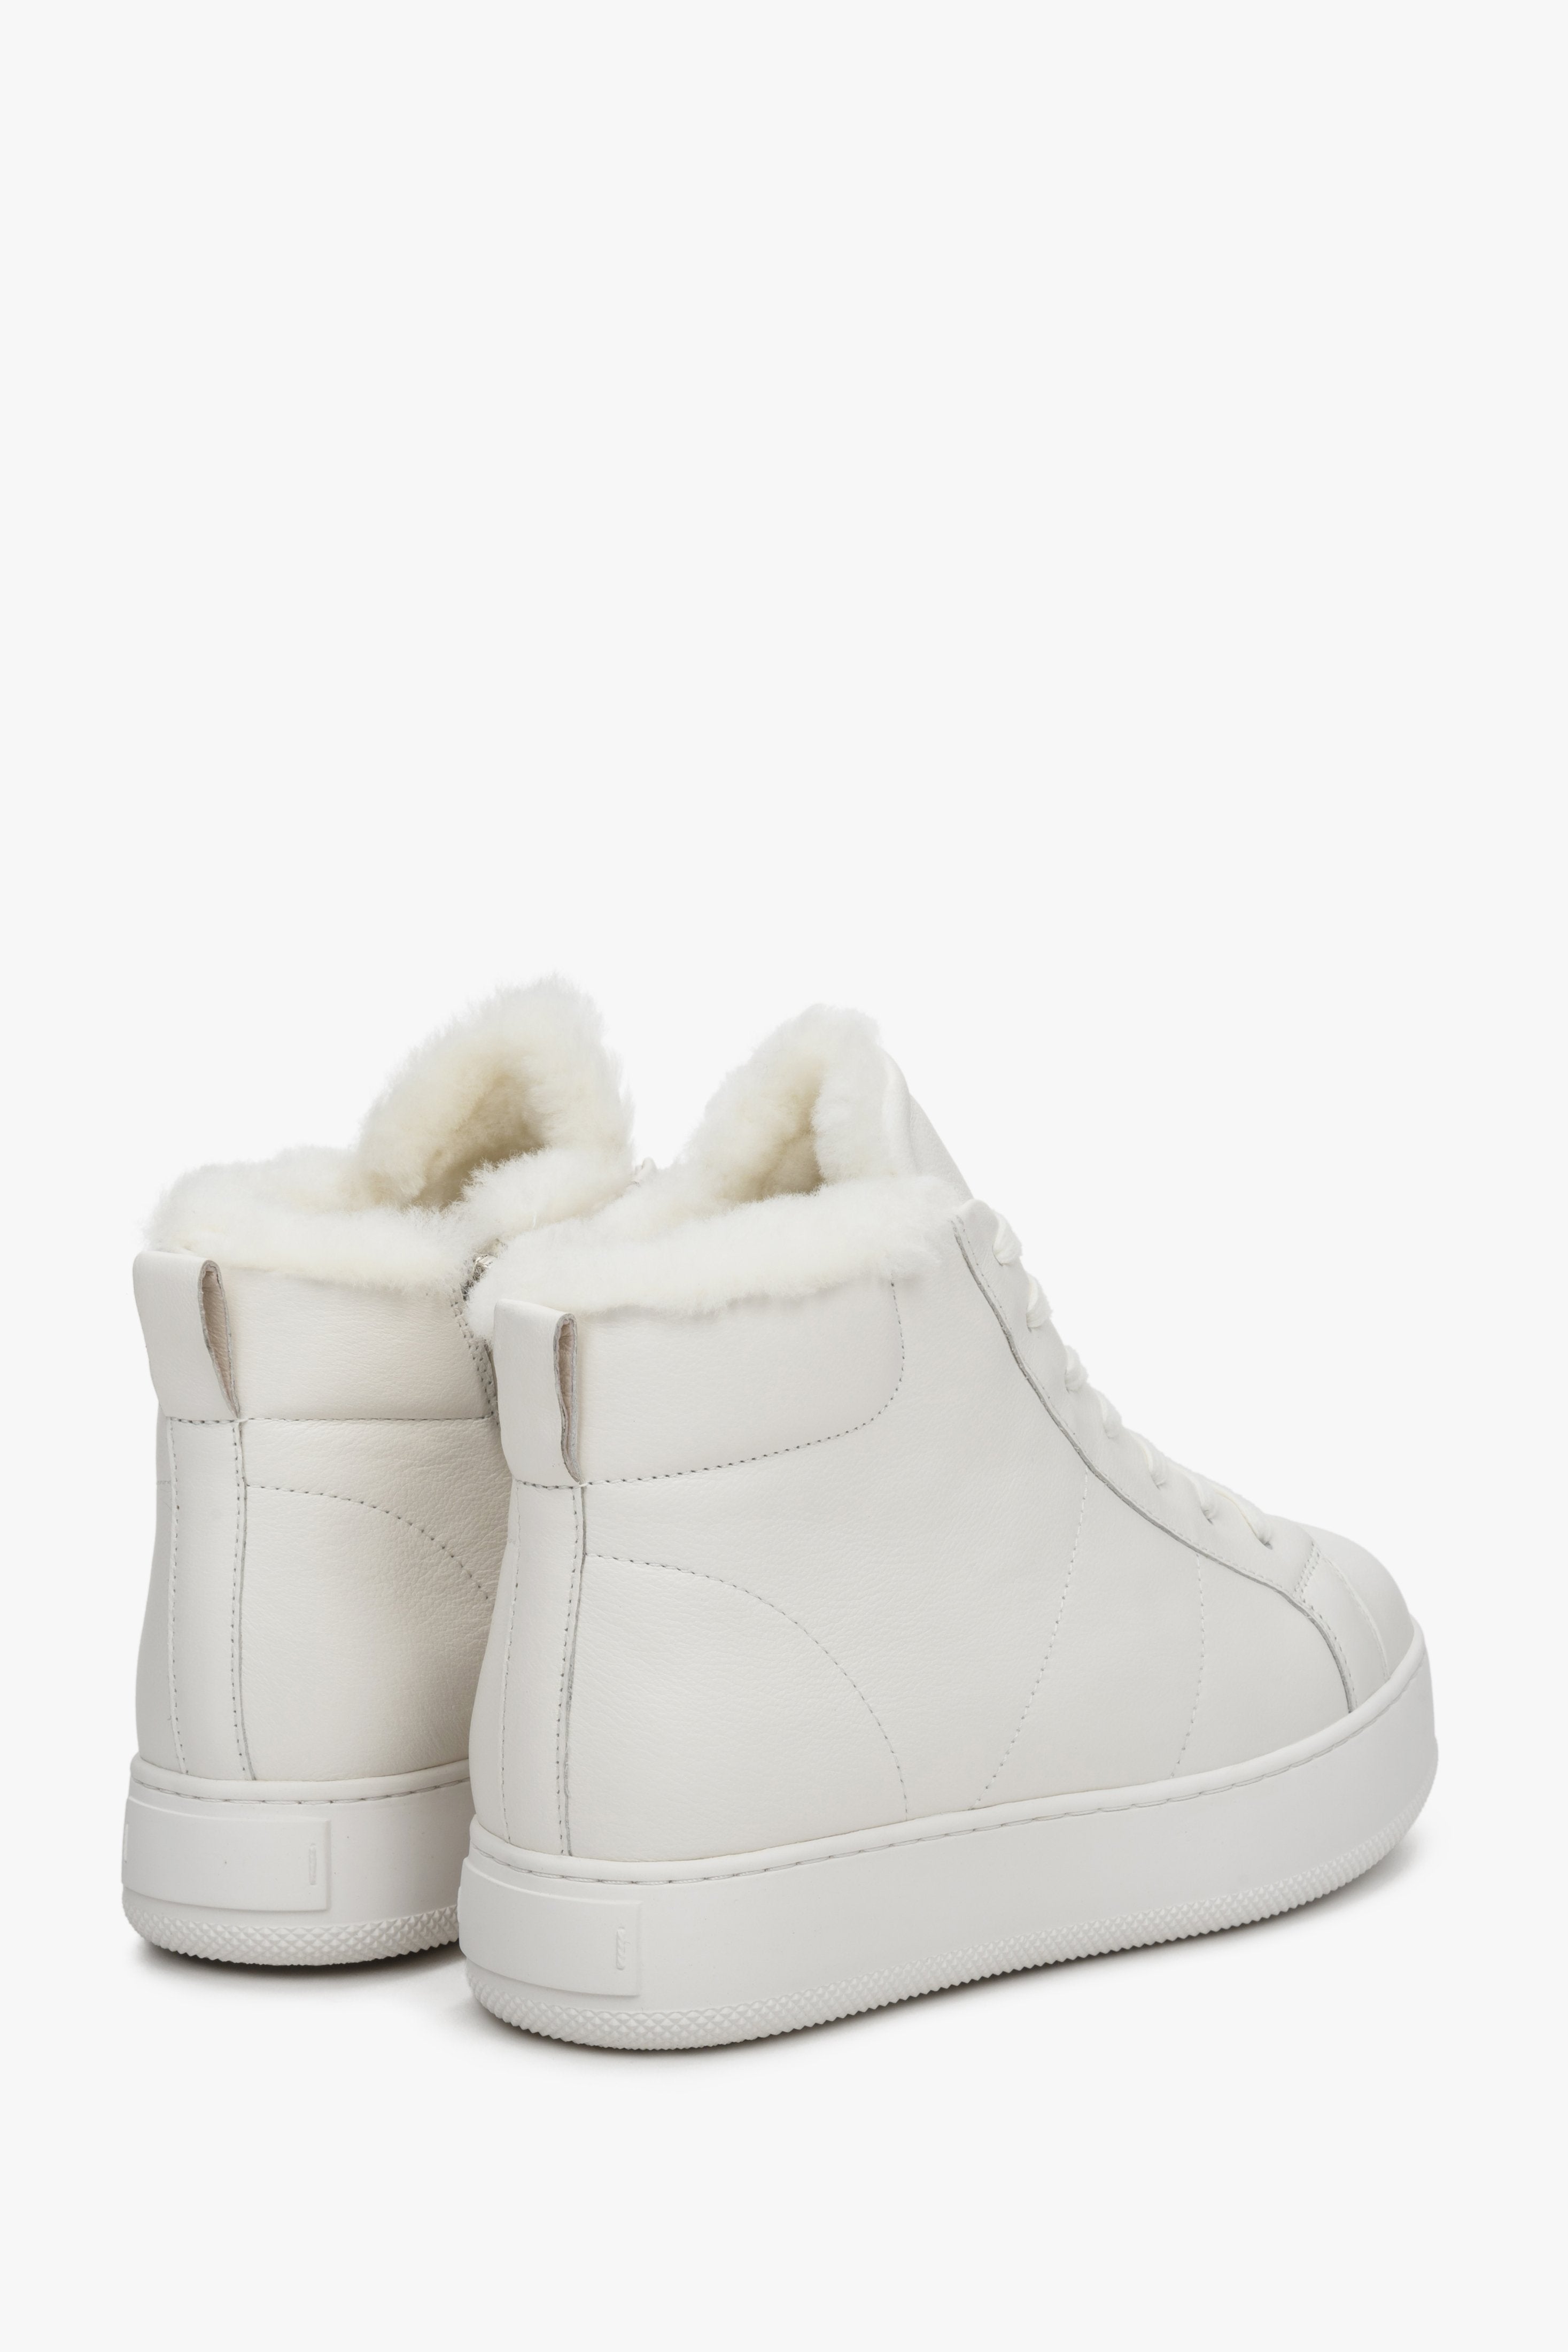 Buty sneakersy damskie na zimę Estro - tylna część buta w kolorze białym.